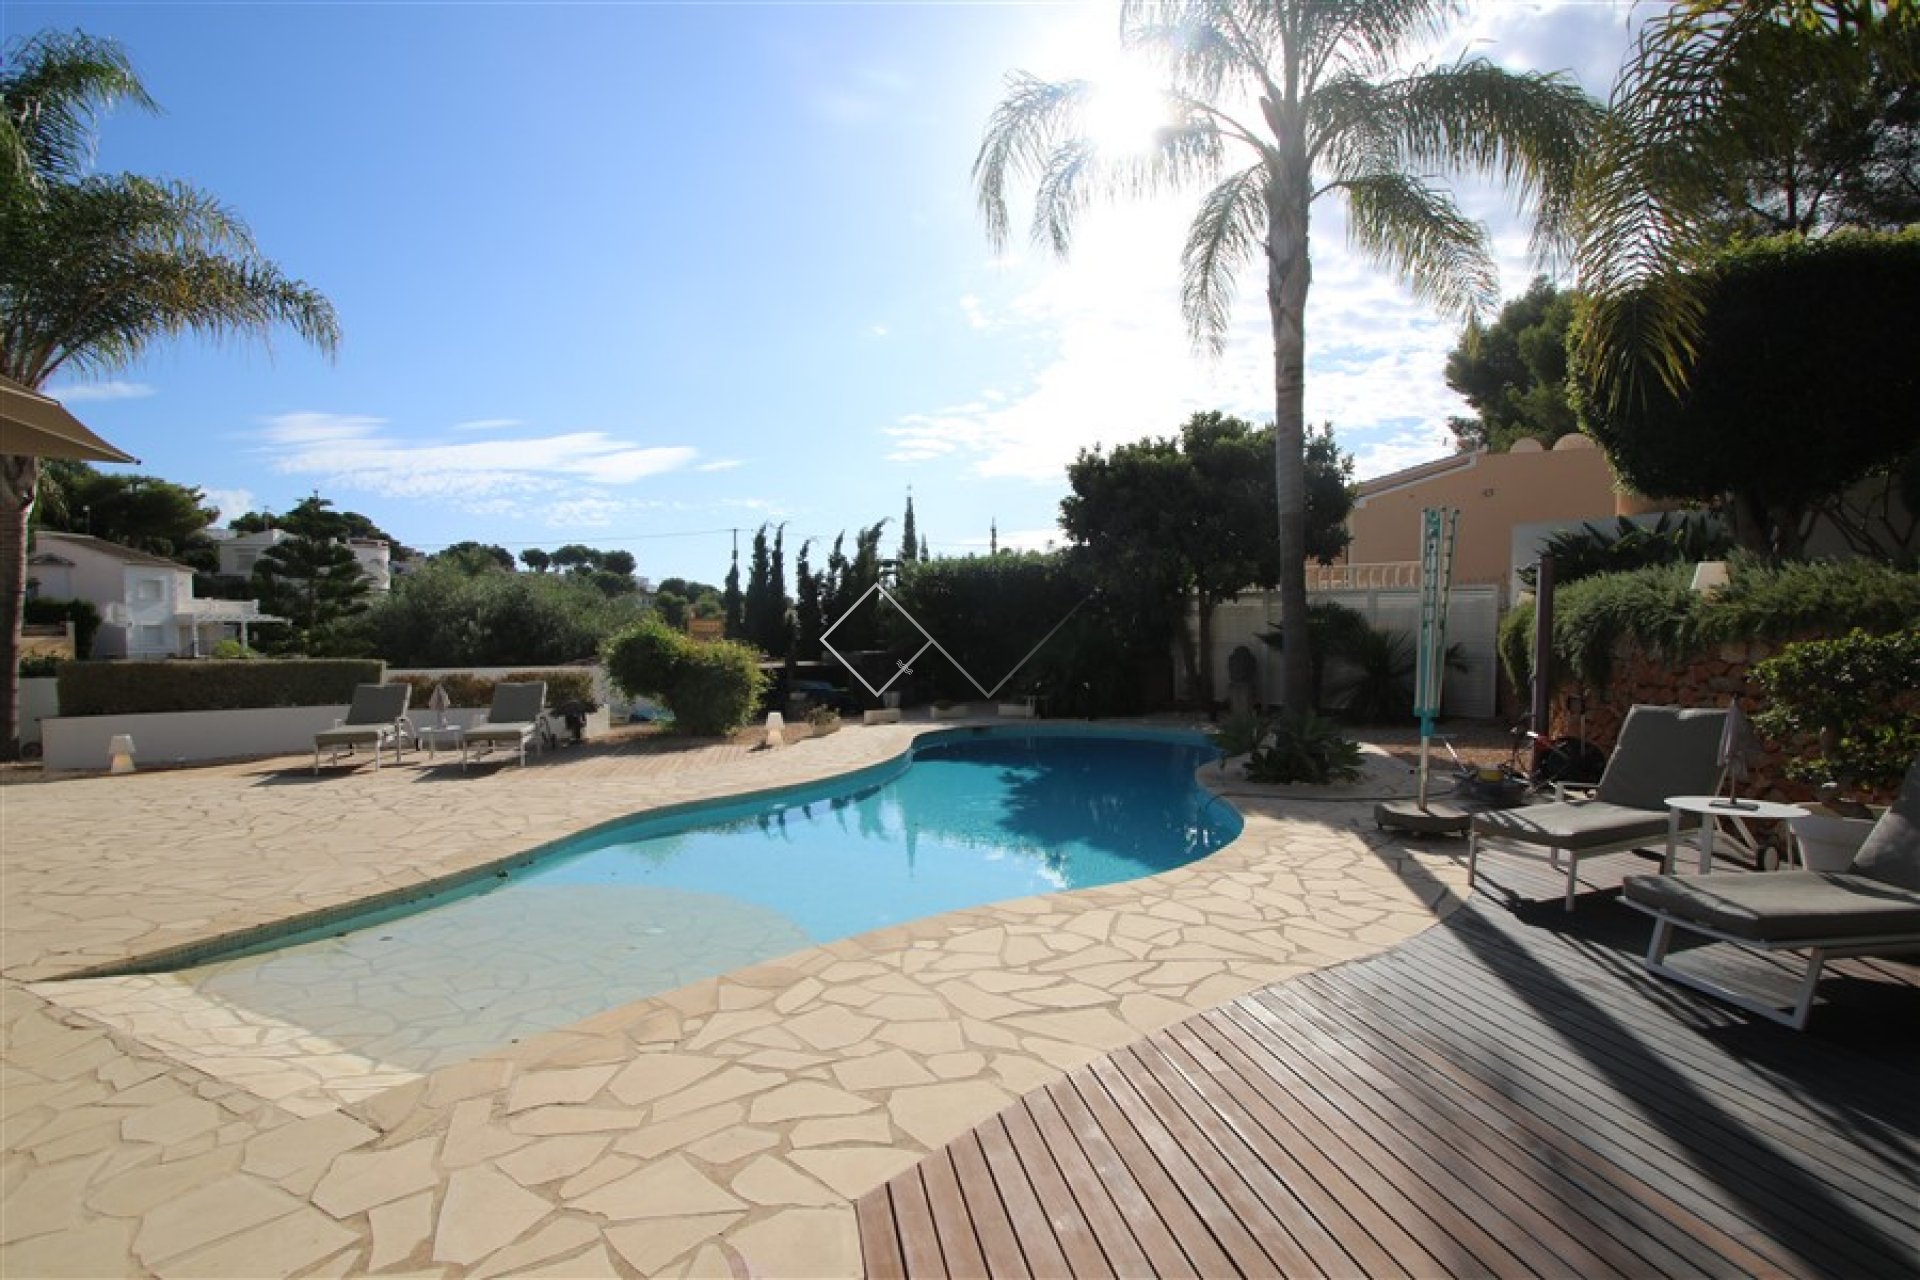 piscine et terrasse - Villa Ibiza à vendre à Benissa avec piscine chauffée